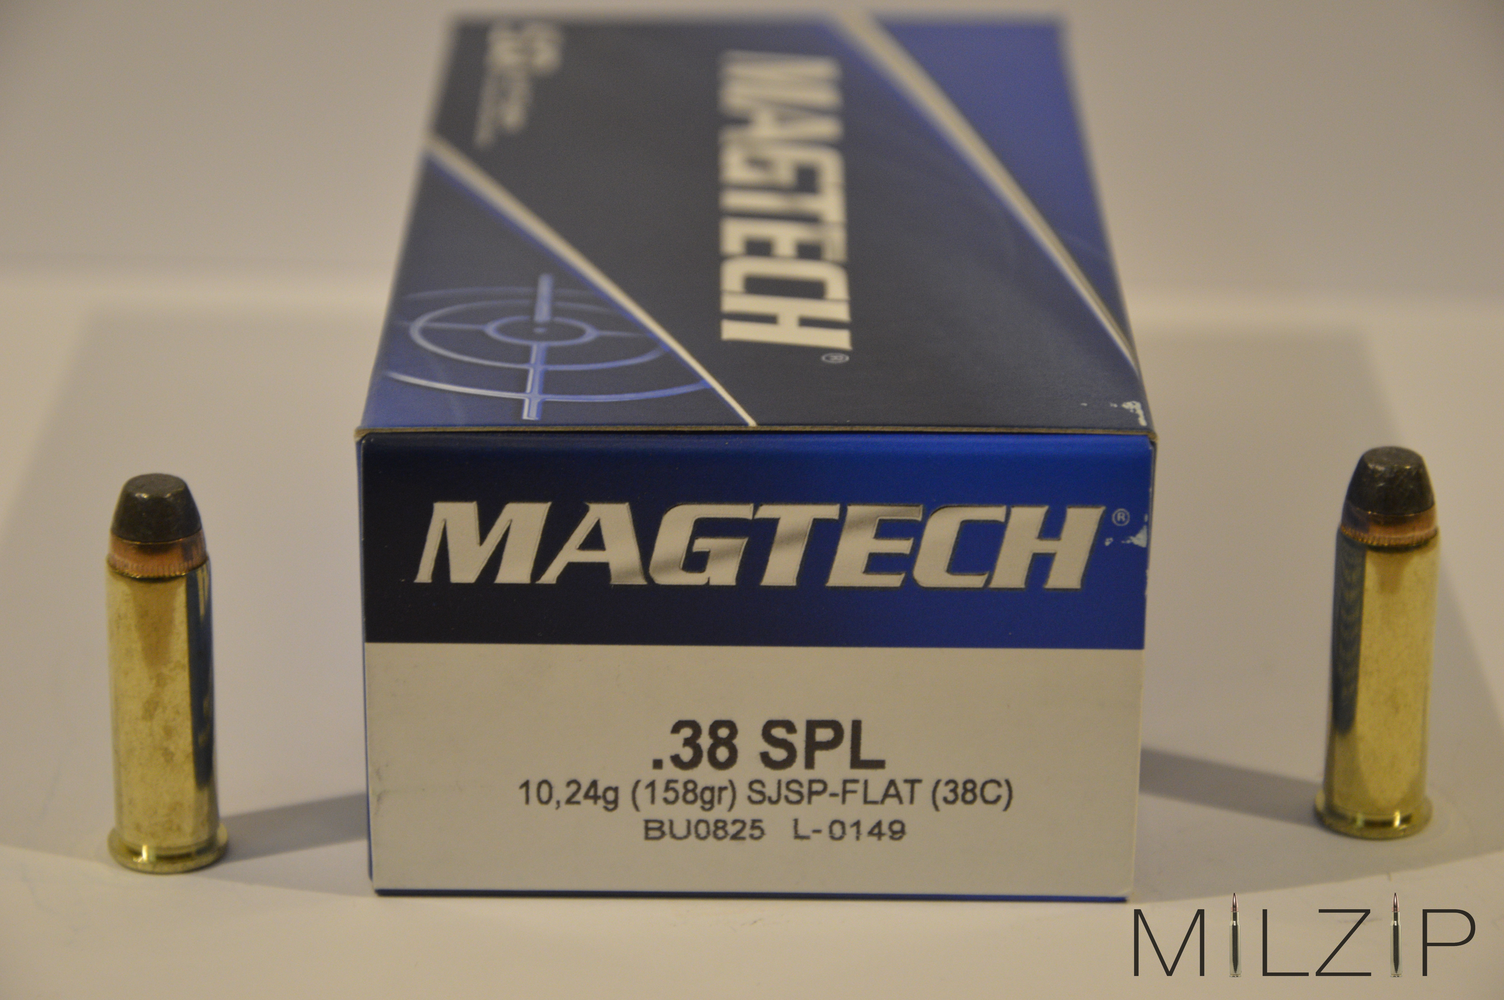 Magtech .38 SPL 10,2g/158grs SJSP